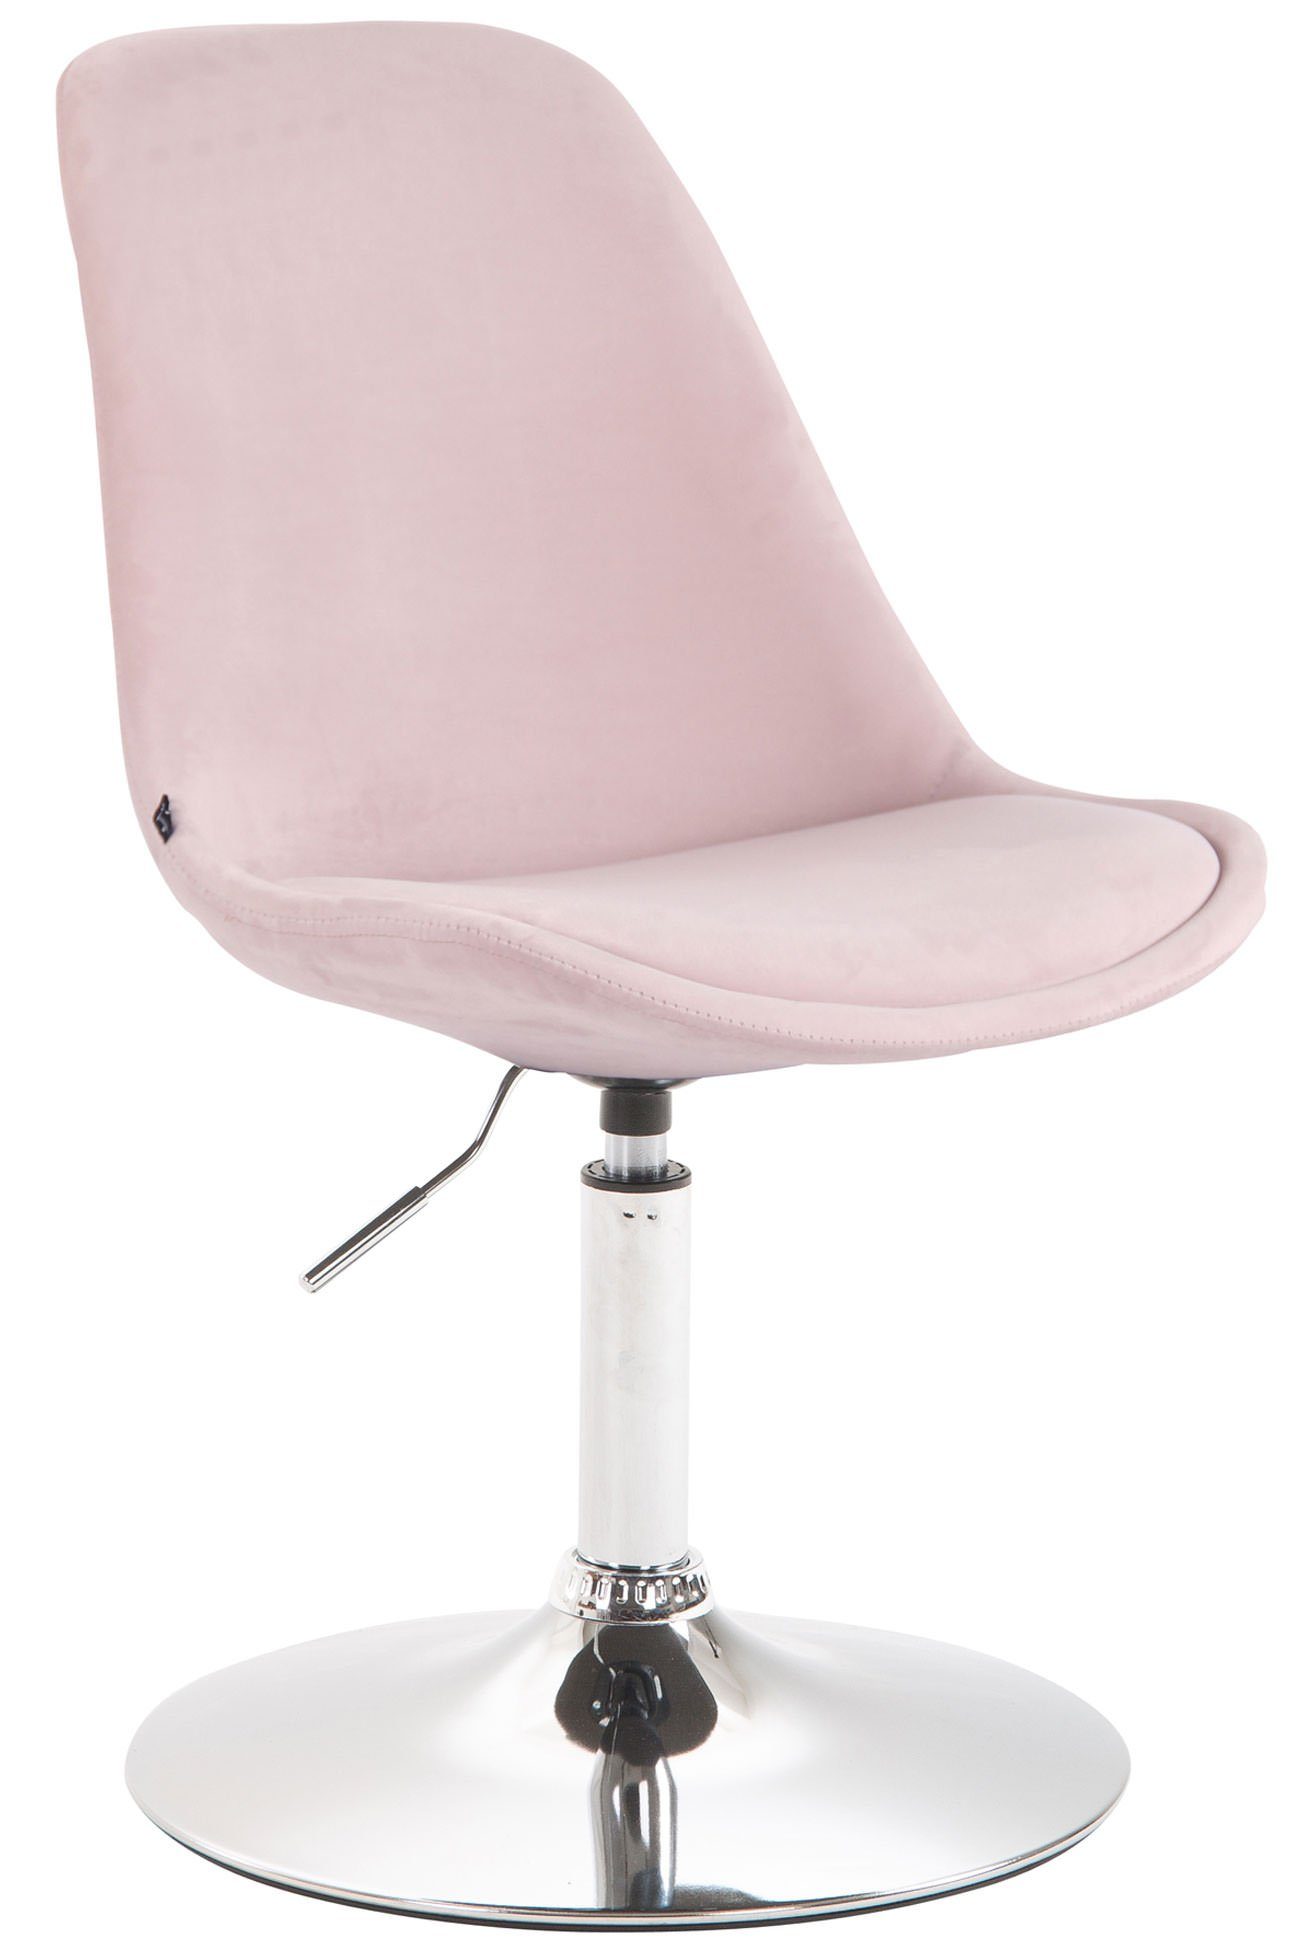 Konferenzstuhl - (Küchenstuhl Esszimmerstuhl Sitzfläche Polsterstuhl), mit - - gepolsterter Sitzfläche: pink TPFLiving Mavic Wohnzimmerstuhl Esstischstuhl - chrom Metall Gestell: hochwertig - Samt